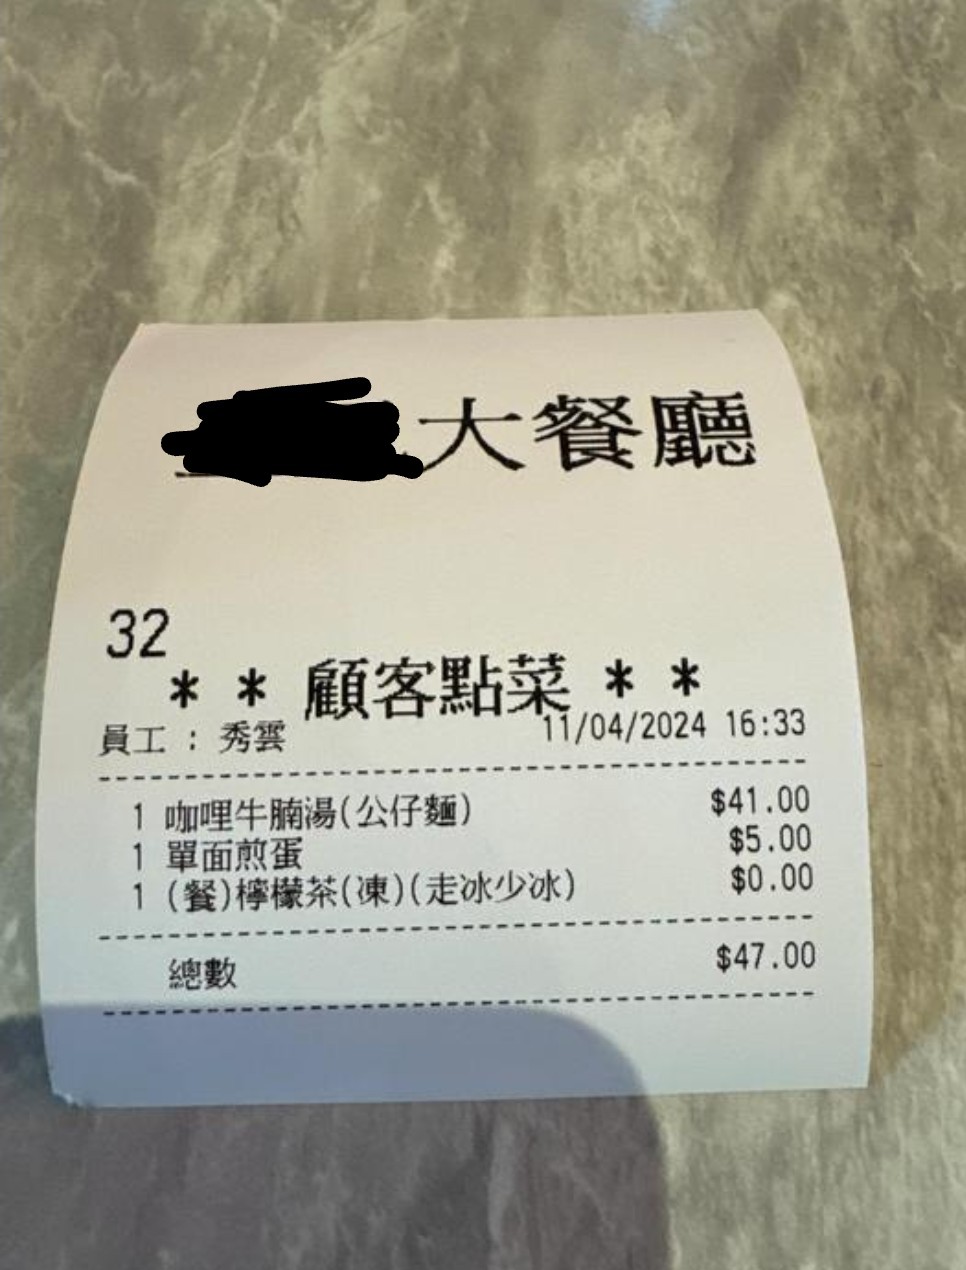 港男茶餐廳被收取奇怪費用經過｜由事主張貼的收據可見，他當天在茶餐廳點選了一個下午茶餐，包括咖喱牛腩湯（公仔麵）連凍檸茶，合共$41